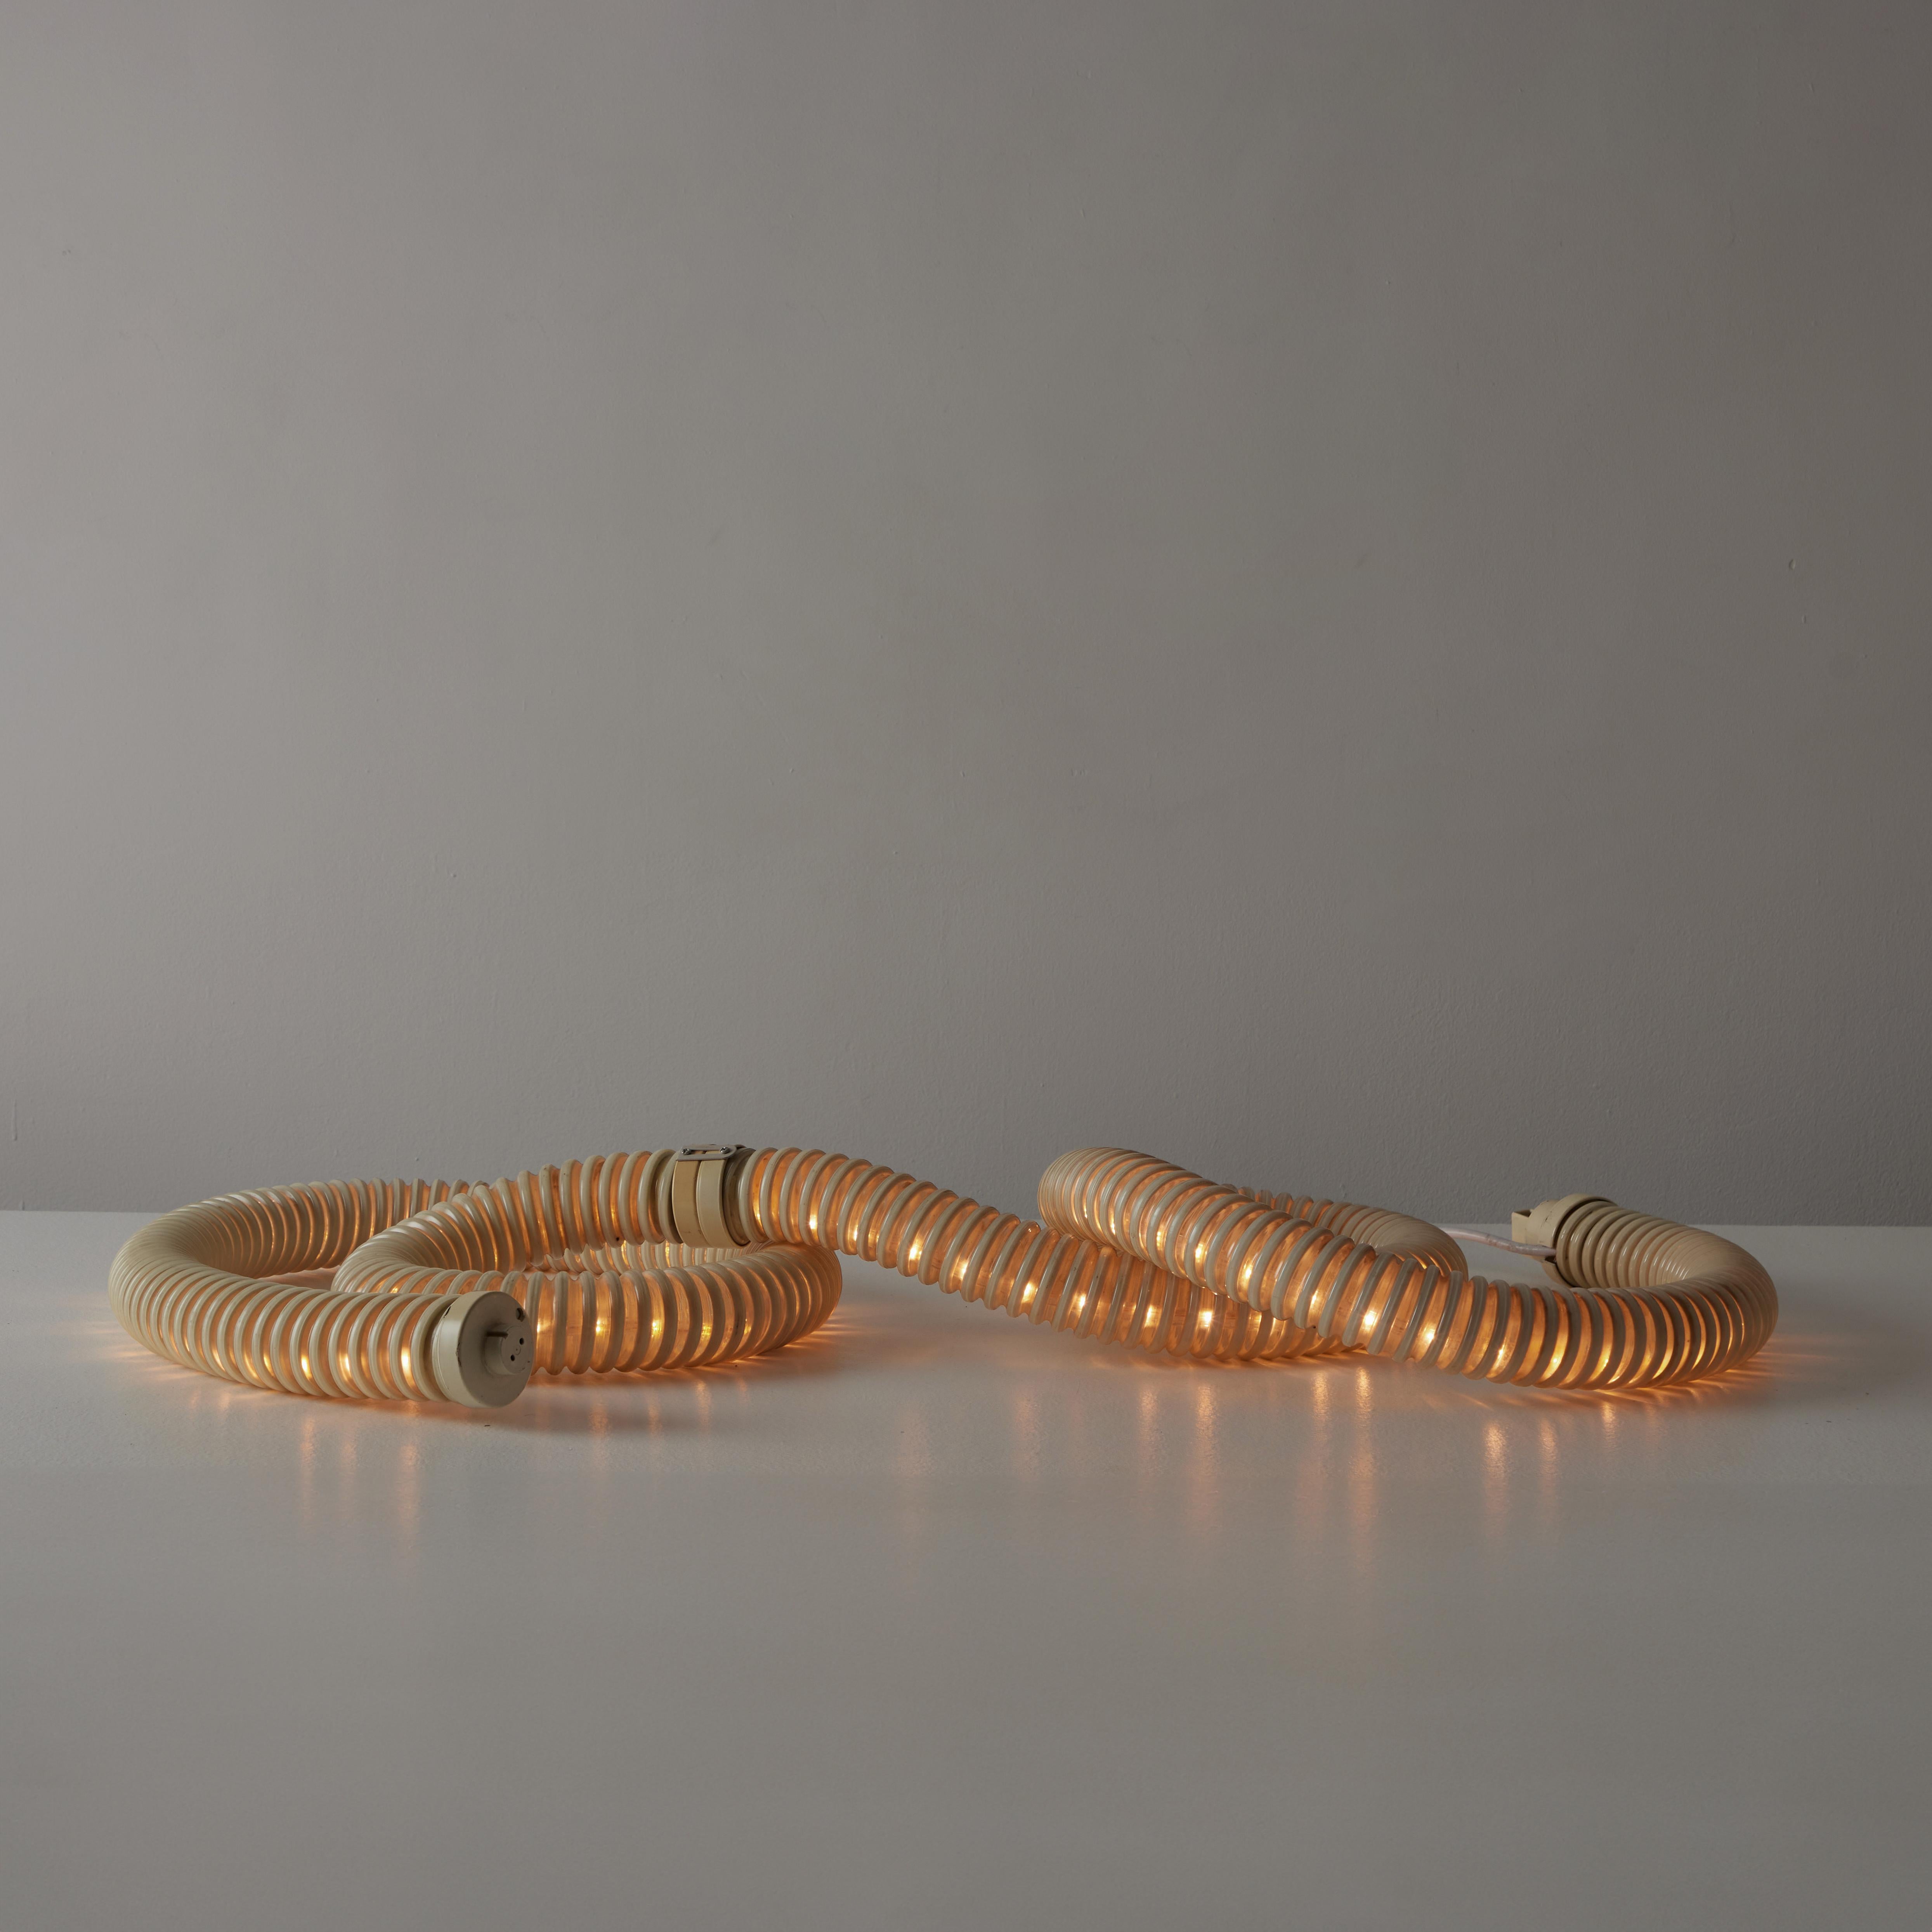 Lampe 'Boalum' de Livio Castiglioni et Gianfranco Frattini pour Artemide. Conçue et fabriquée dans les années 1970. Le boîtier en PVC spécial malléable blanc cassé et transparent est doté d'une bande lumineuse LED. La lampe en forme de serpent peut